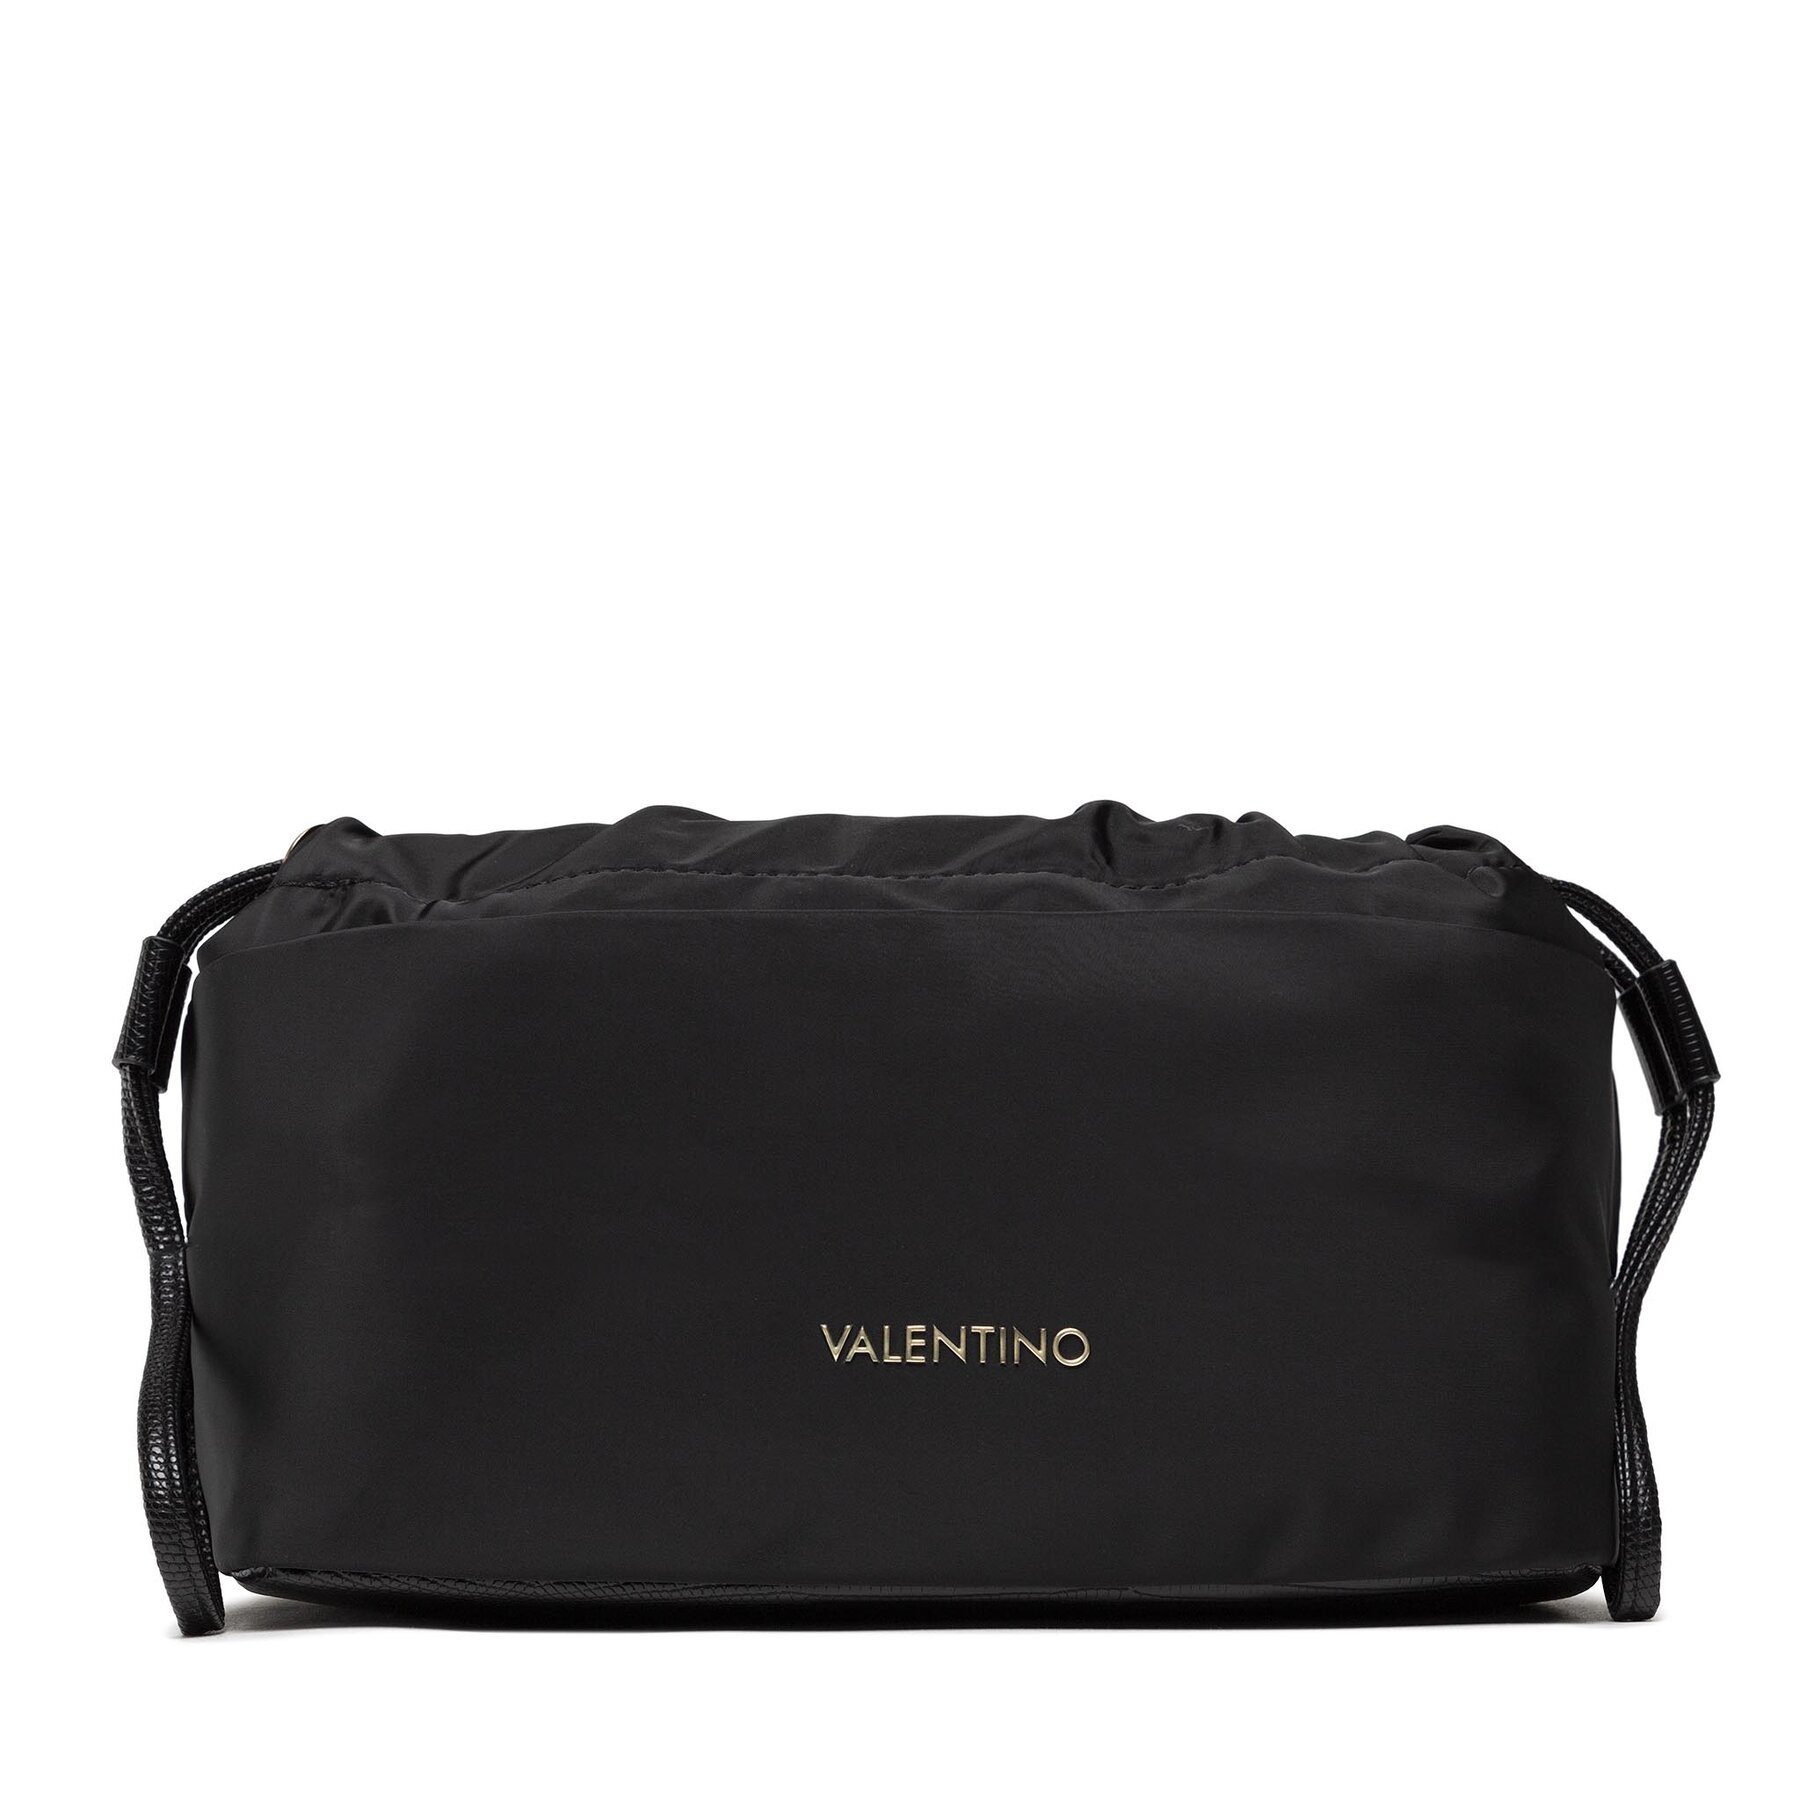 Handtasche Valentino Baati VBE6IN600 Nero 001 von Valentino